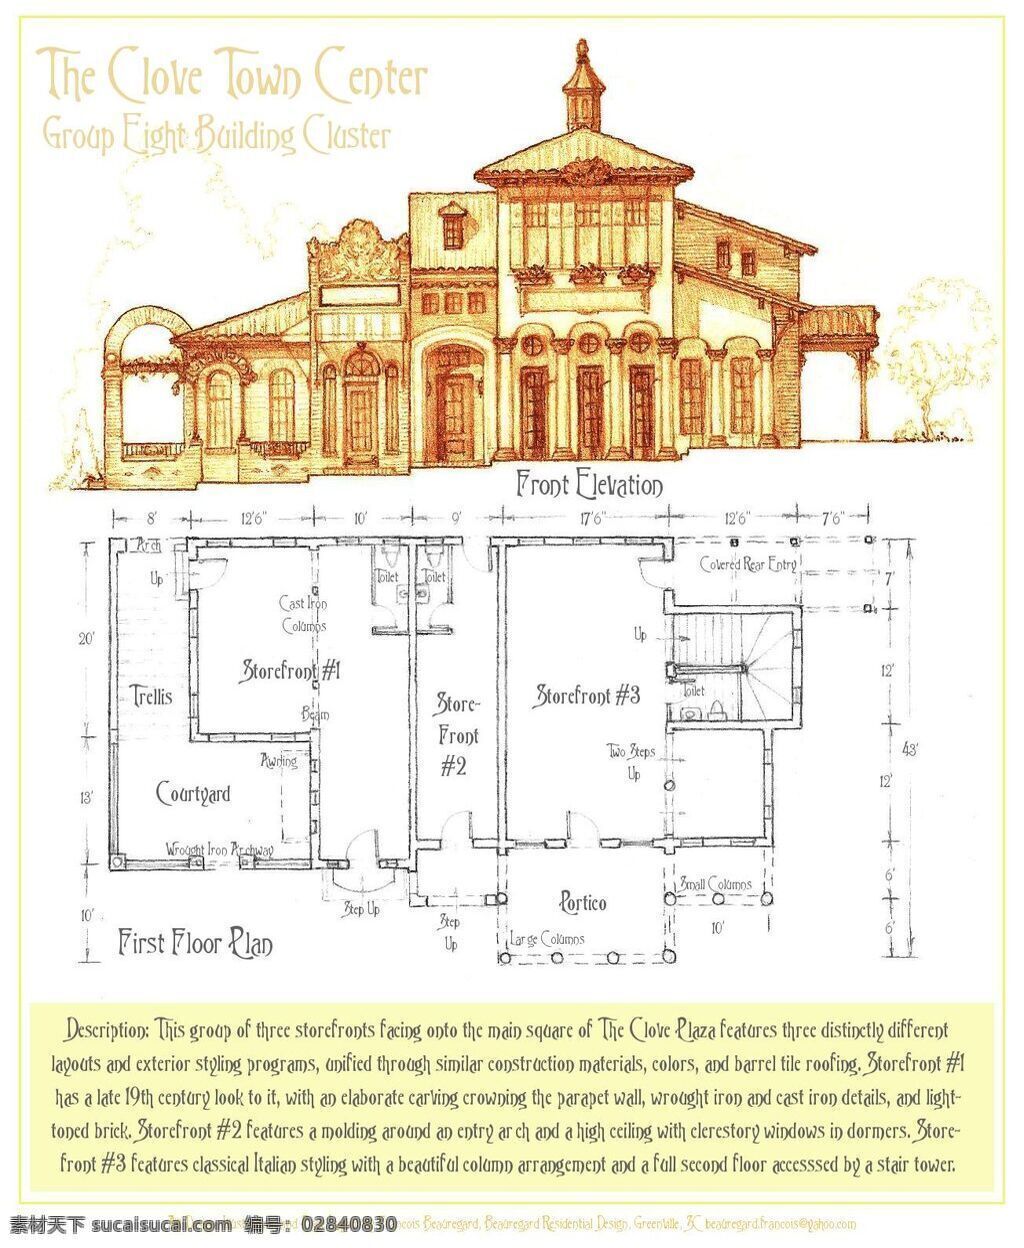 欧式 建筑 谢 工 图 平面图 手绘图 图纸 城堡 建筑施工图 建筑平面图 施工图 欧式建筑 手绘效果图